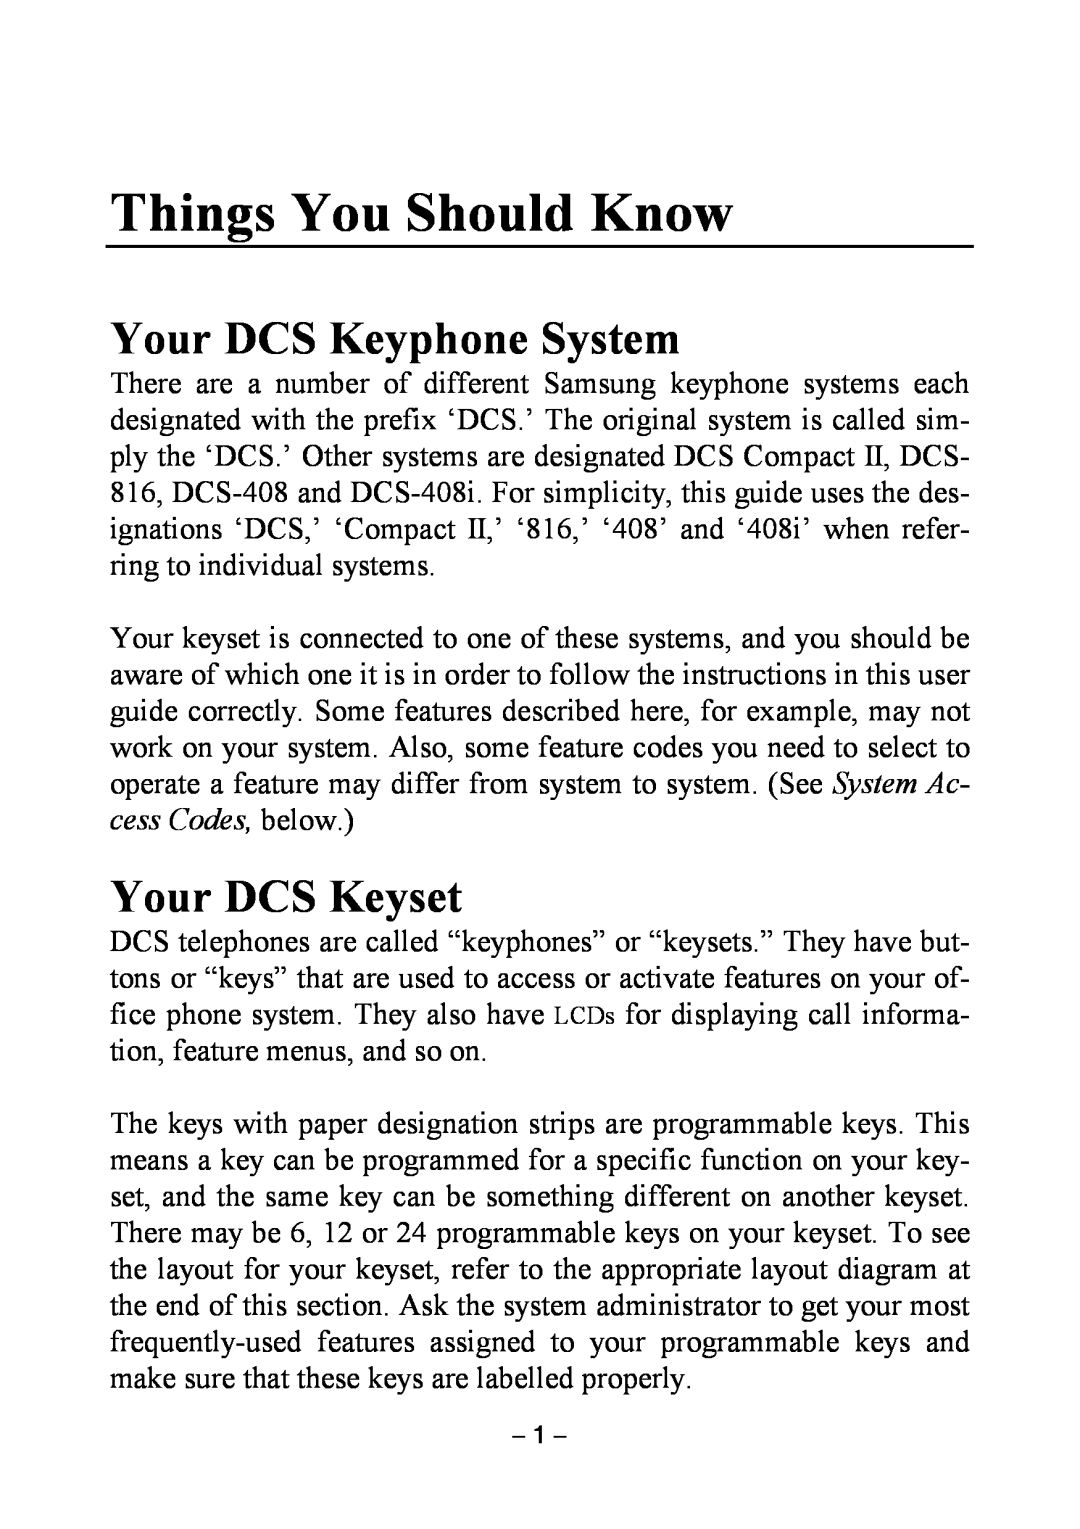 Samsung DCS KEYSET manual Things You Should Know, Your DCS Keyphone System, Your DCS Keyset 